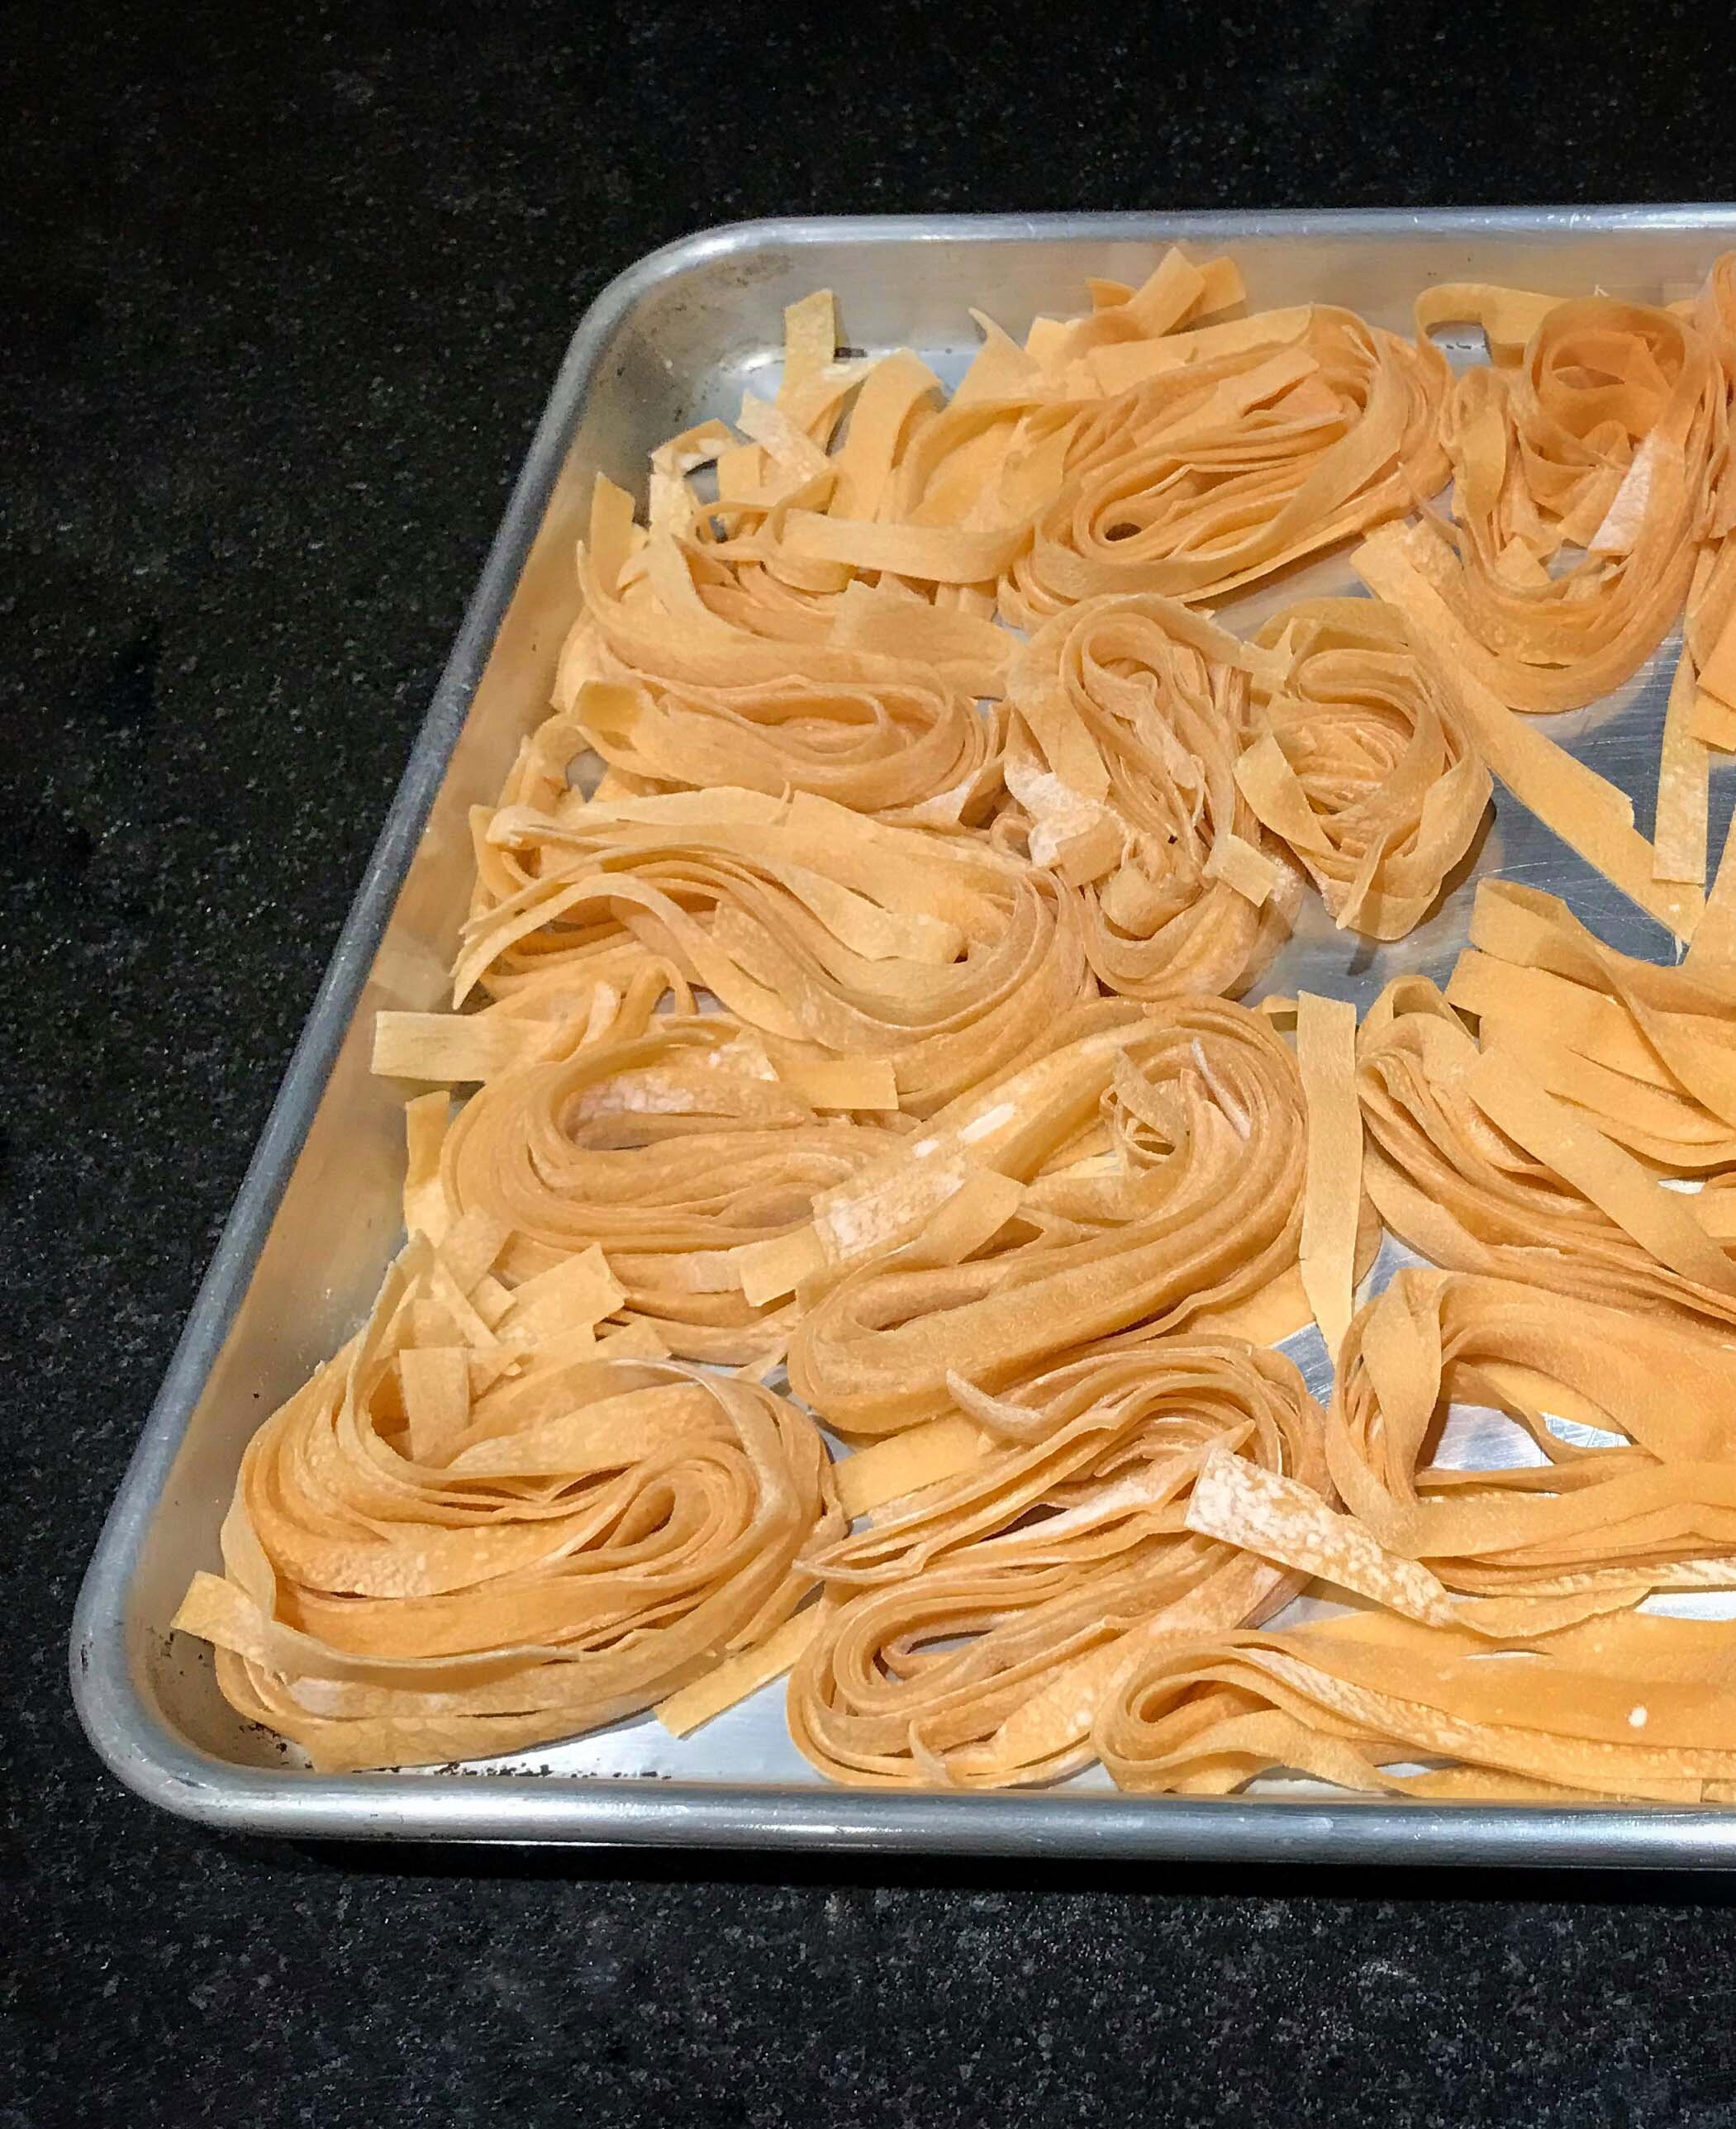 The sheeter for fresh pasta - Homemade pasta